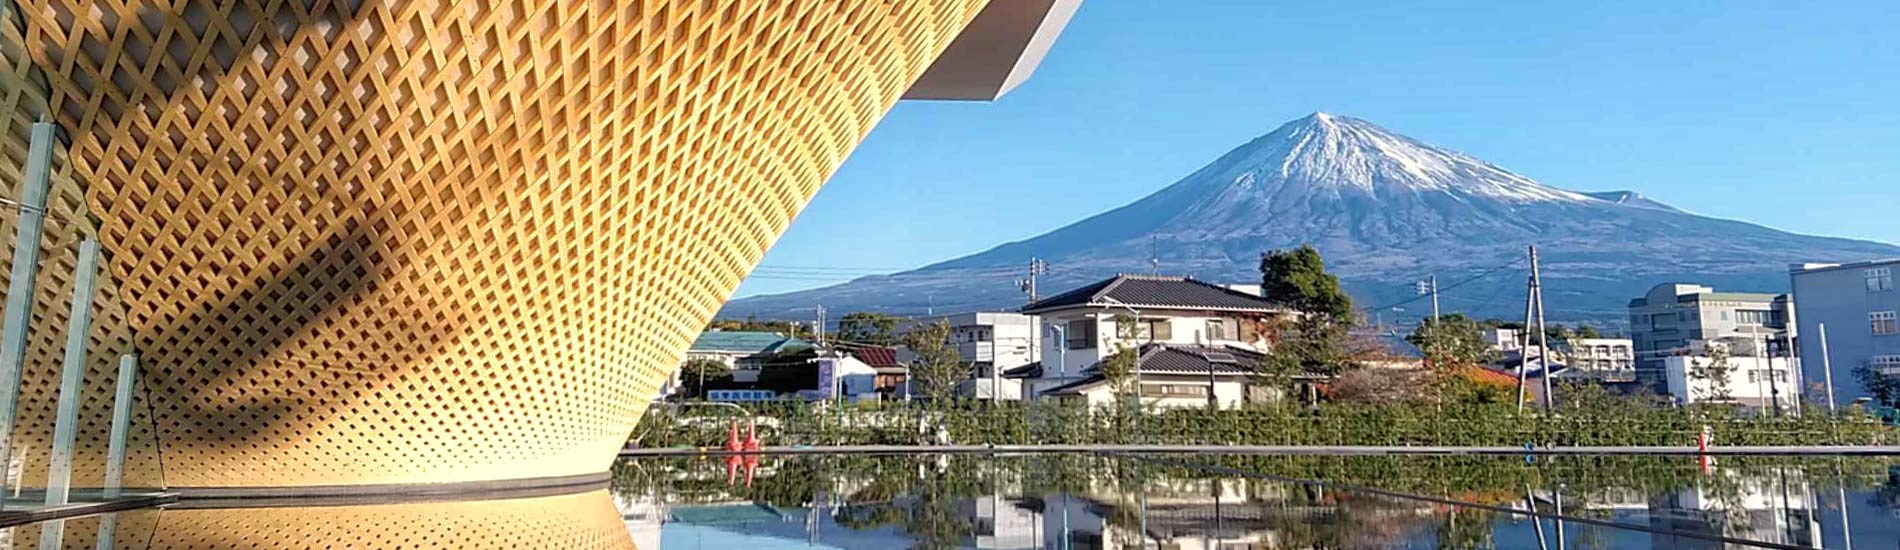 富士山世界遺產中心